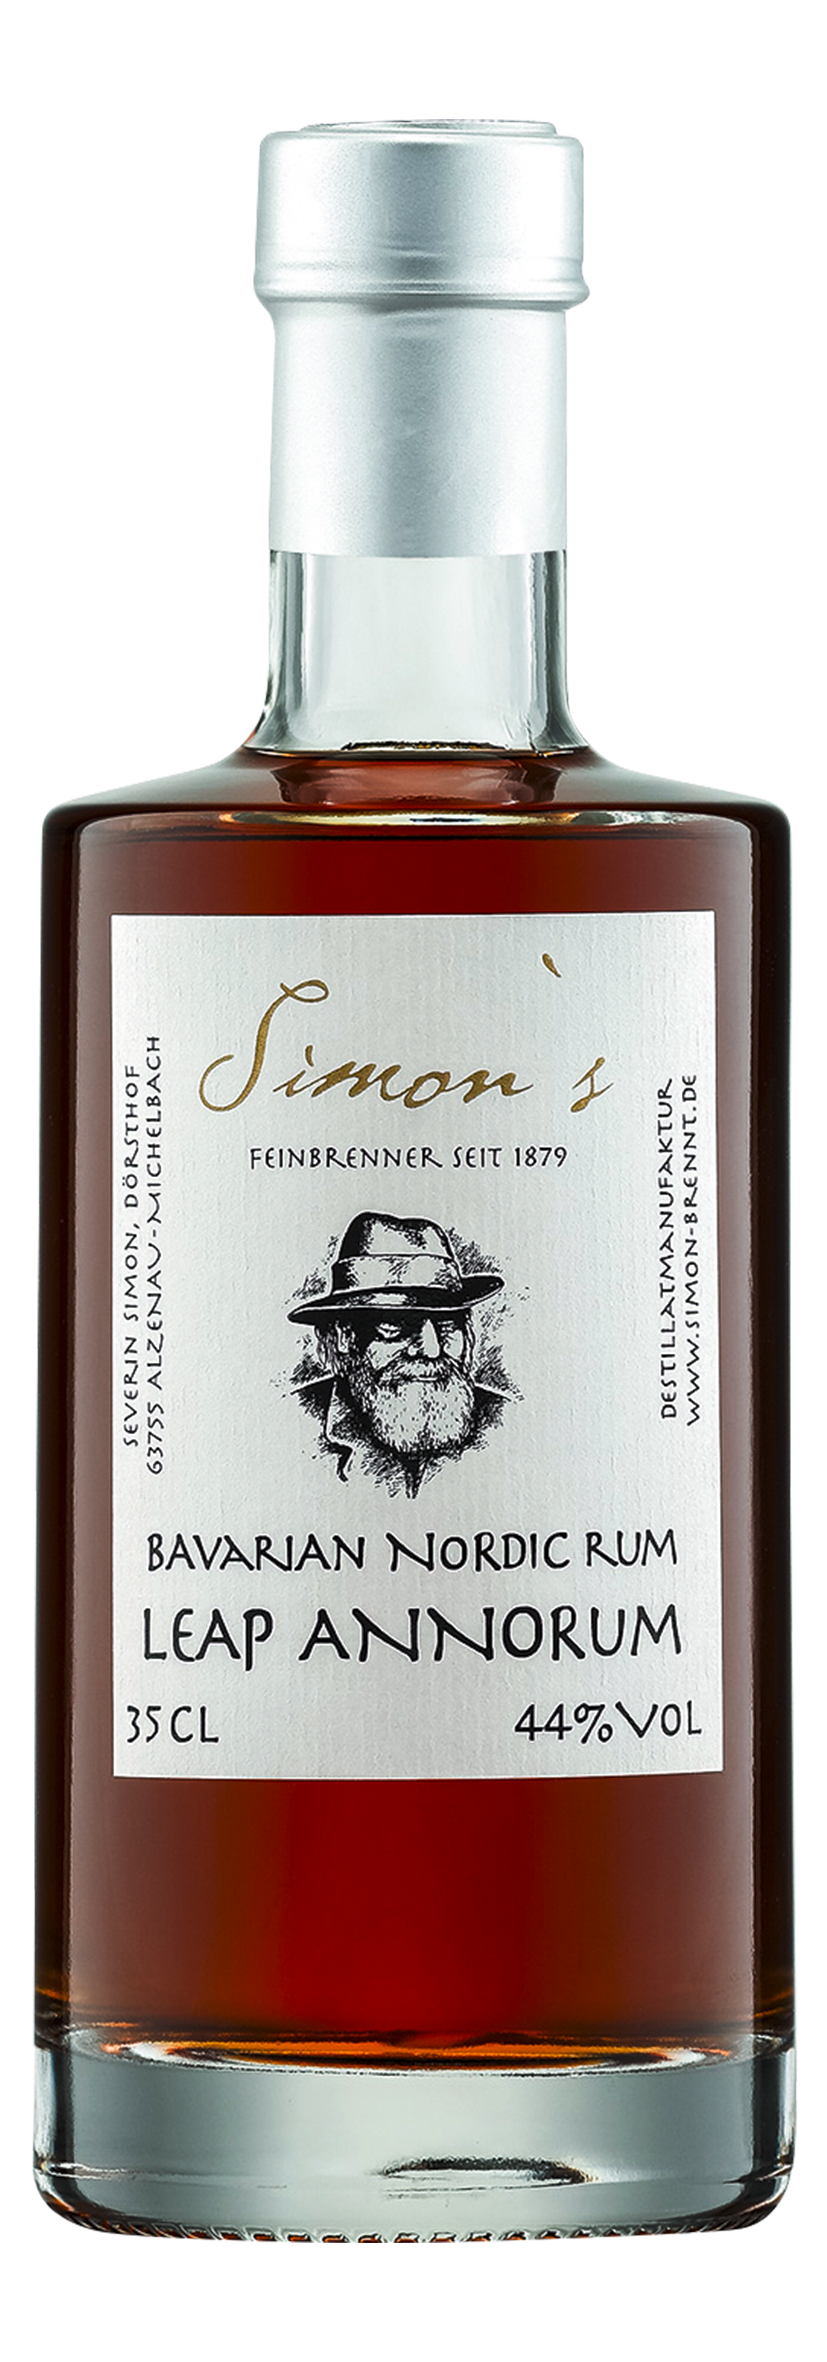 Bavarian Nordic Rum Leap Annorum 0